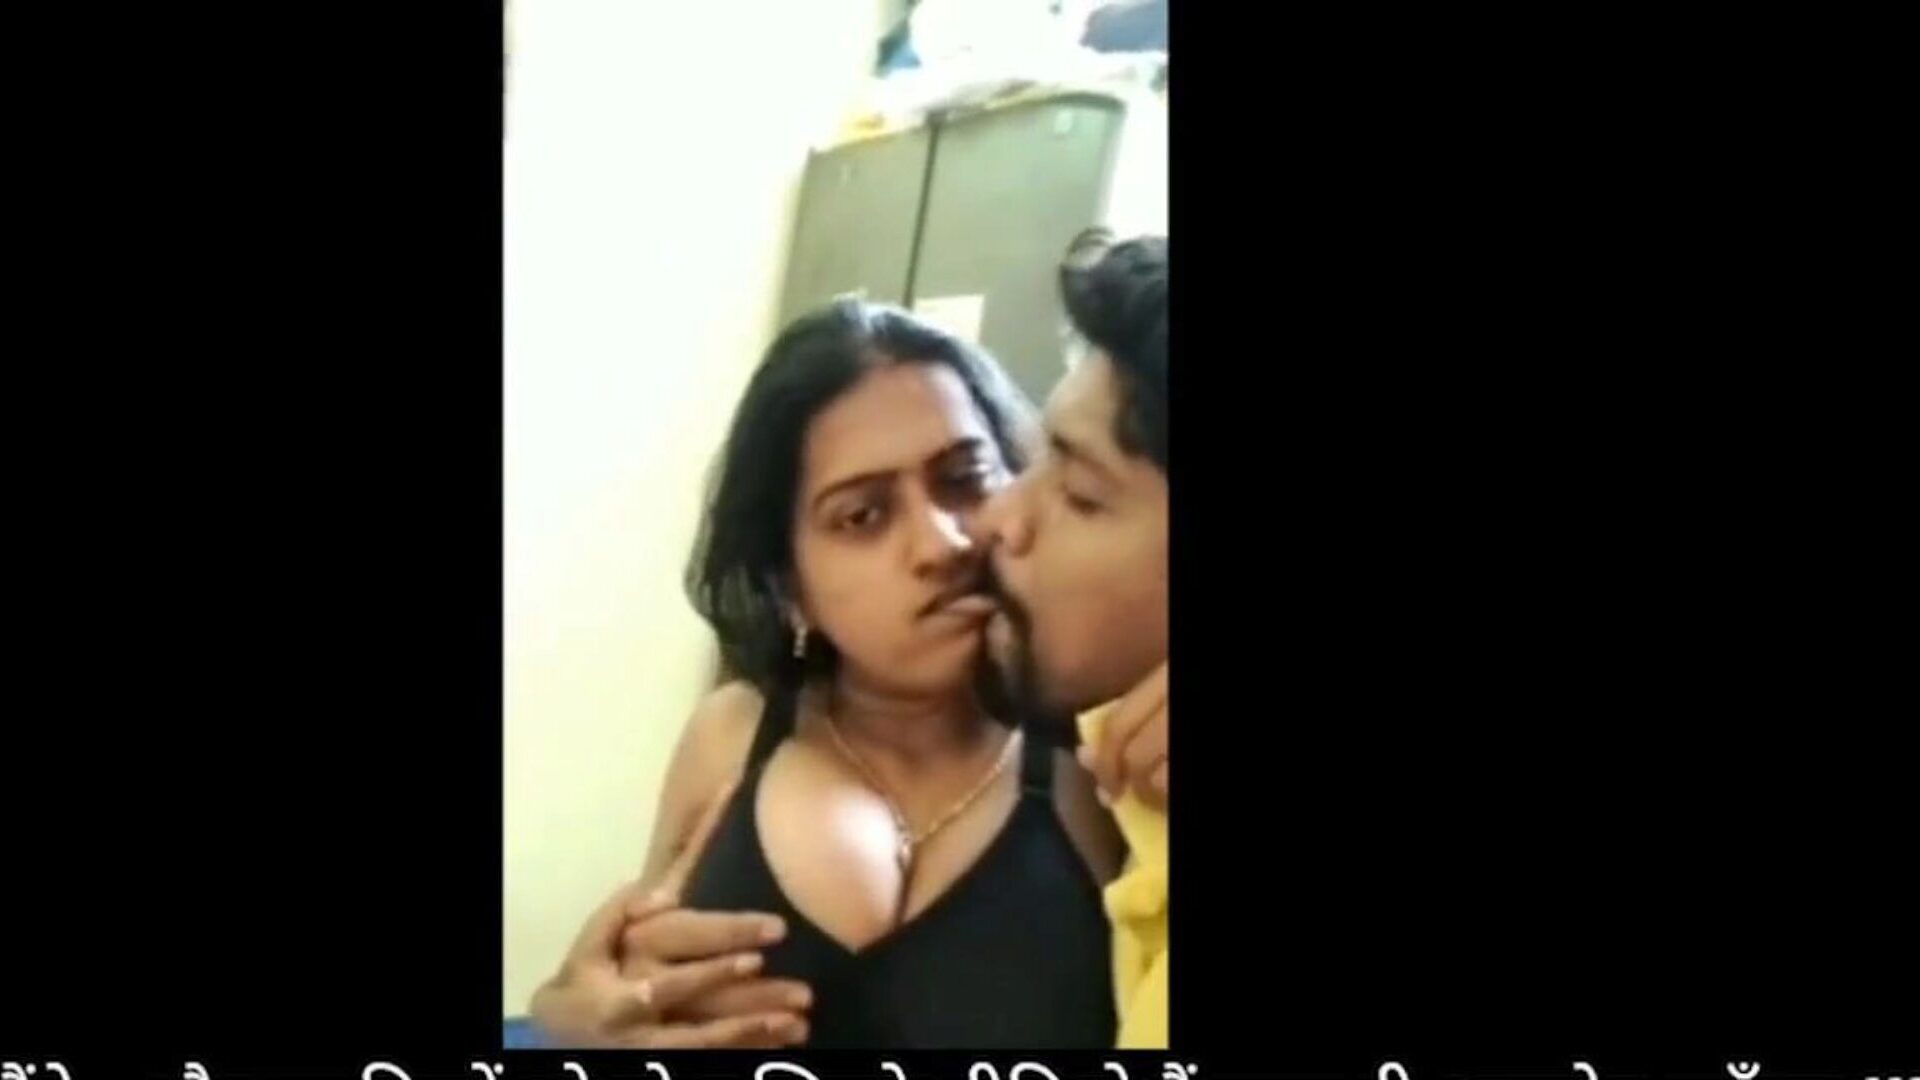 bhabhi devar plaisir de sexe à la maison pendant le verrouillage: porno hd gratuit pour regarder bhabhi devar plaisir de sexe à la maison pendant le film de verrouillage sur xhamster - l'archive ultime du sexe indien gratuit à la maison hd vids de tube porno hard-core